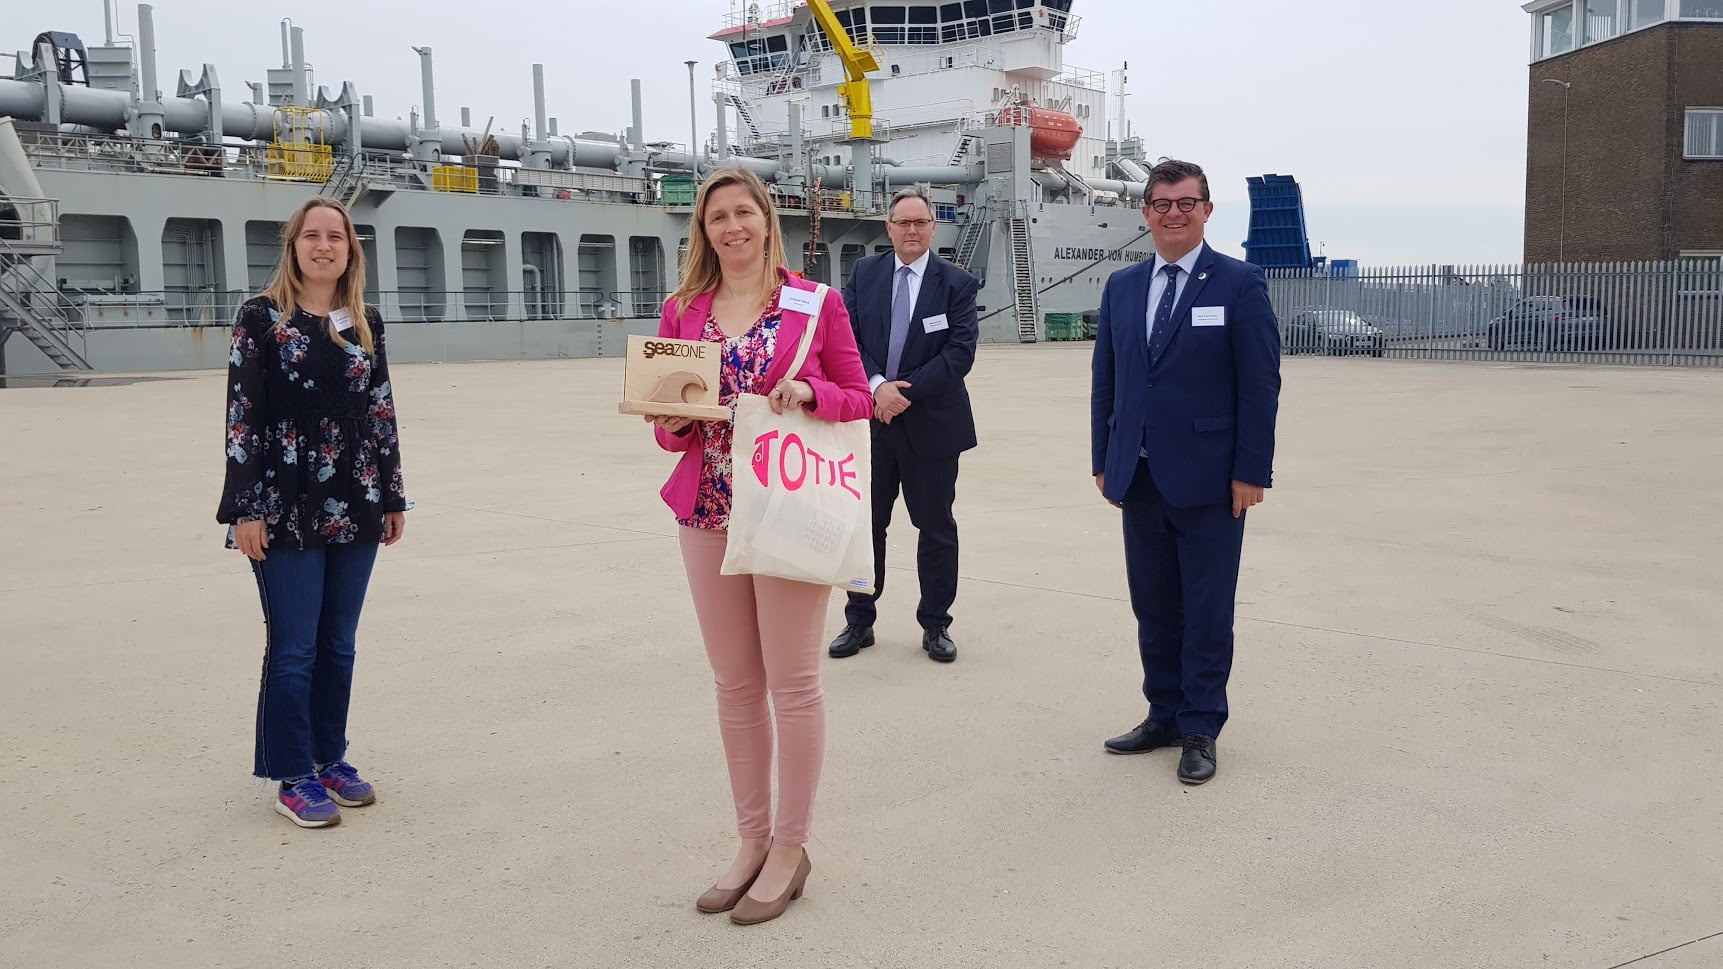 Foto van prijsuitreiking SeaZone project met Liesbet, de Burgemeester Bart Tommelein en meer met op de achtergrond een boot.